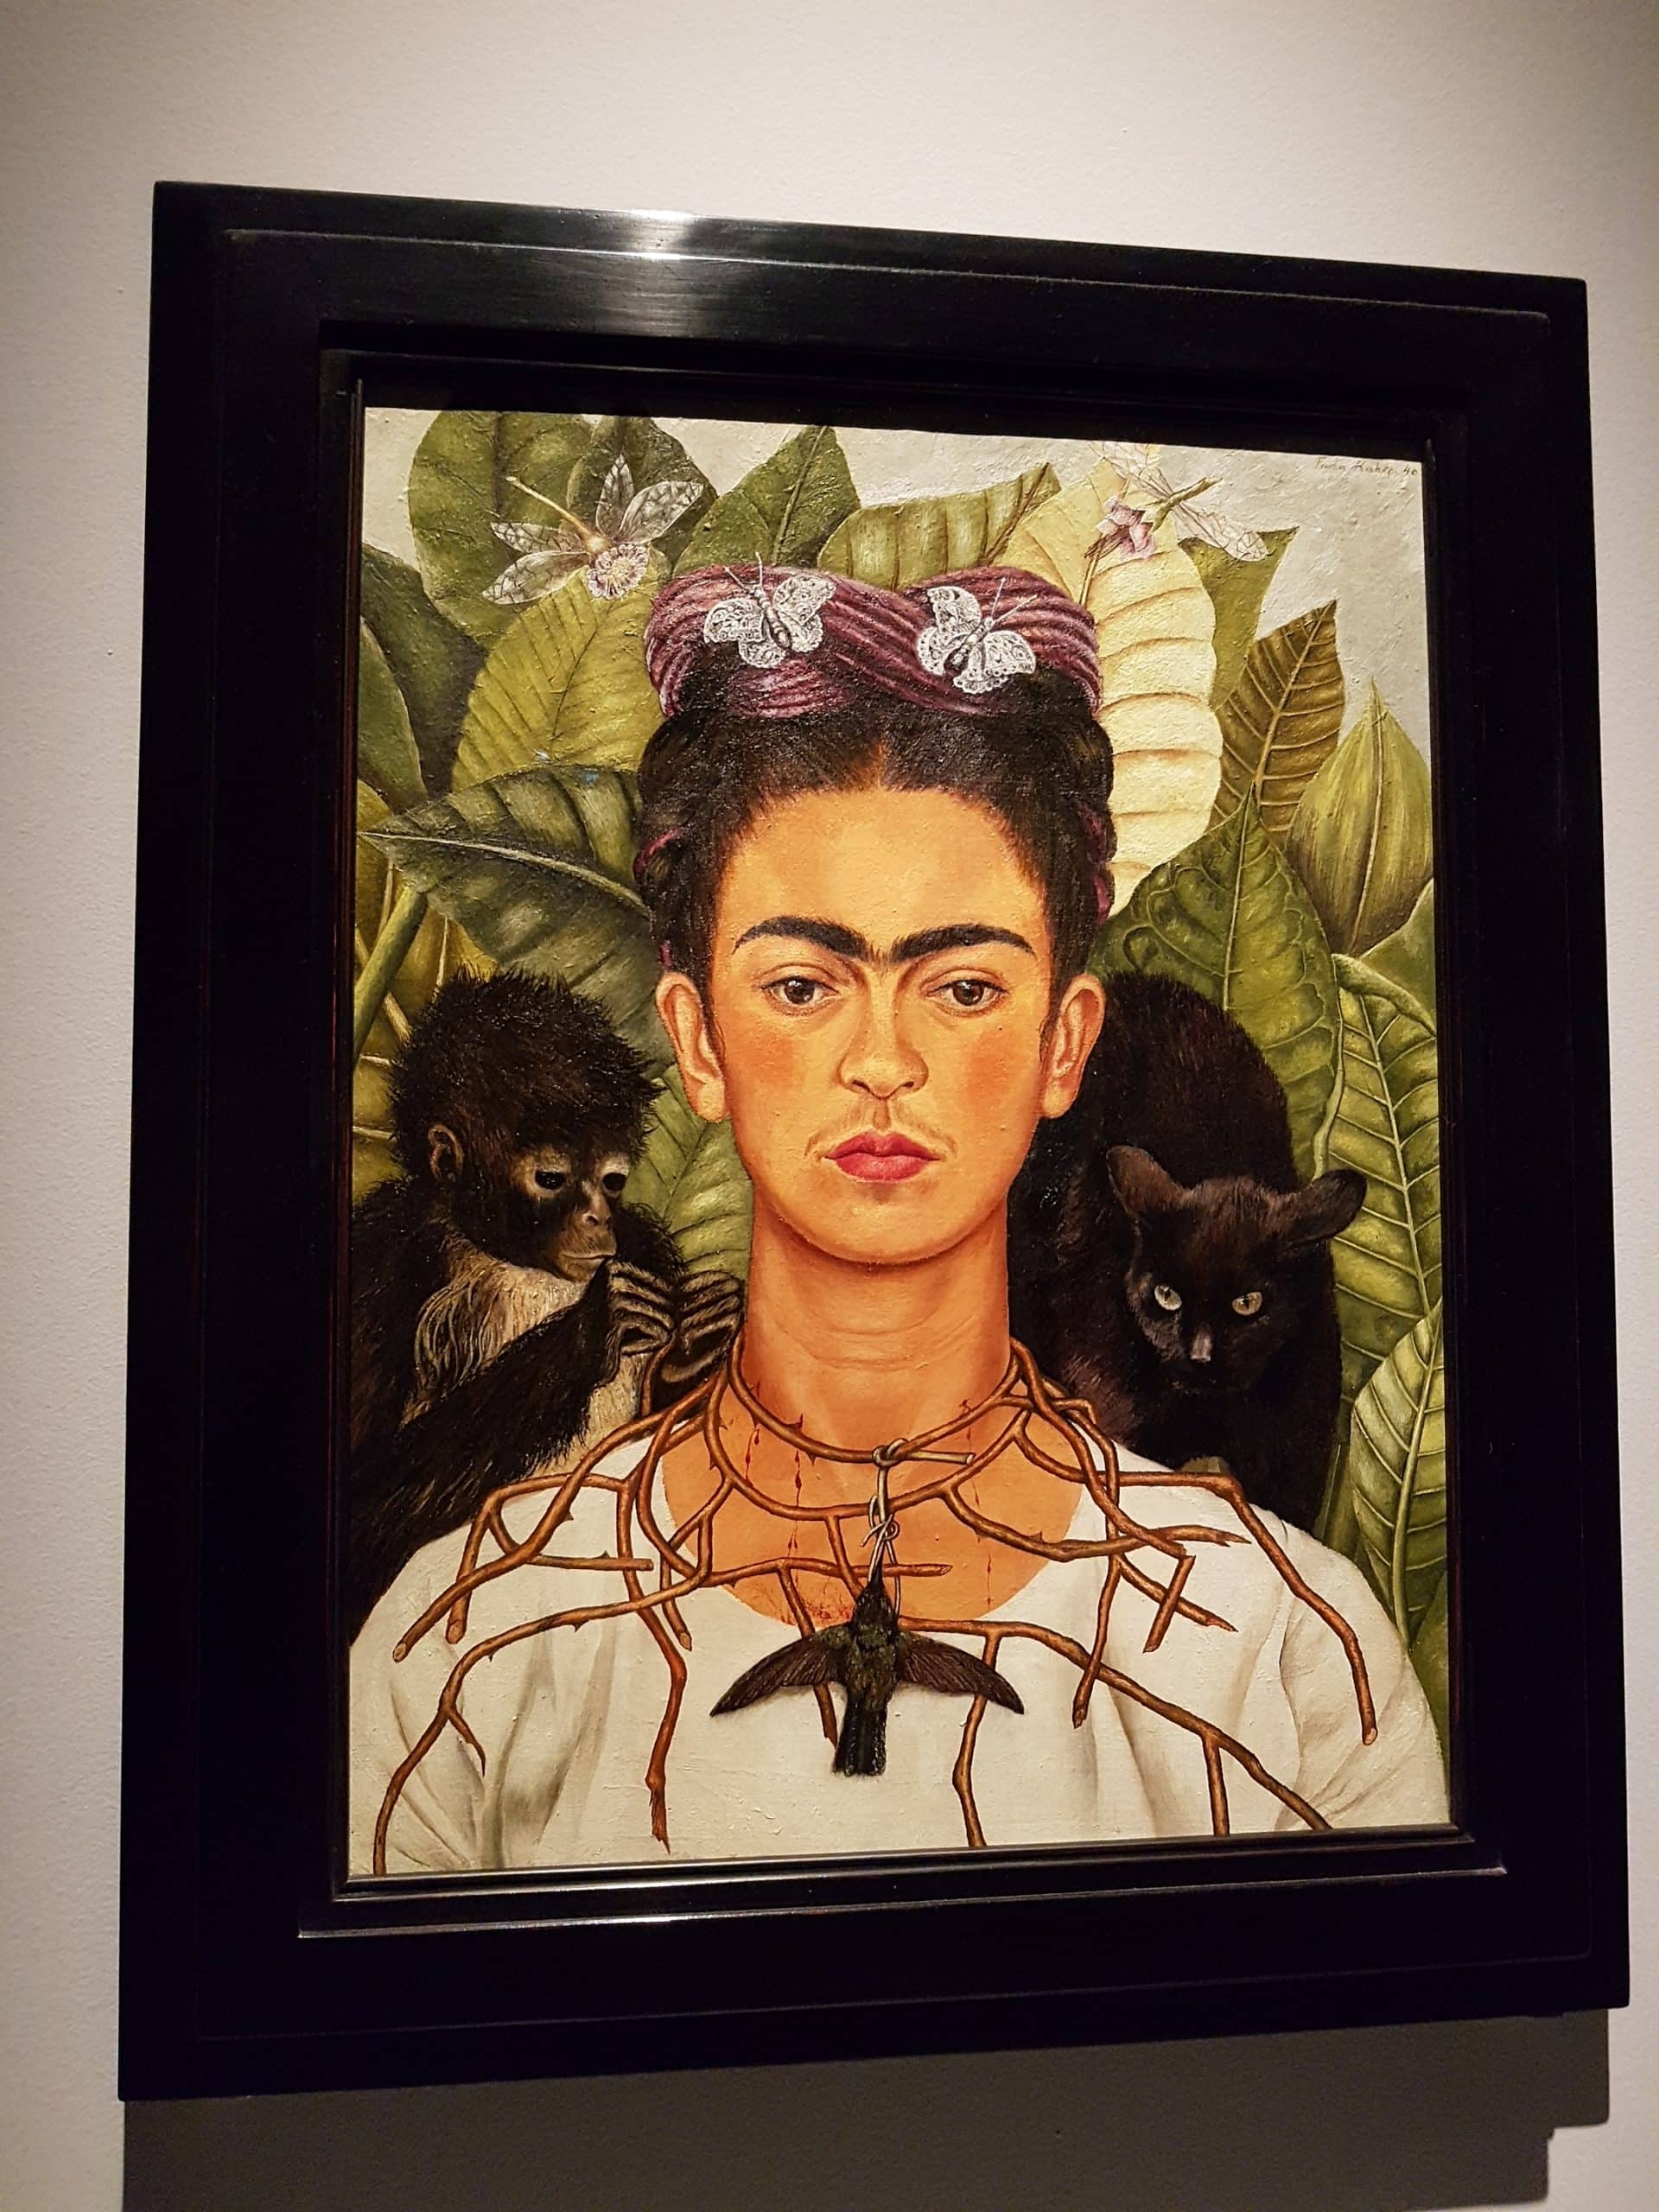 Frida Kahlo malte dieses ikonische Selbstporträt mit Dornenhalskette und Kolibri 1940 als Öl auf Leinwand. Sie schuf es nach ihrer Scheidung von ihrem mexikanischen Künstlerkollegen Diego Rivera und ihrer Trennung von ihrem Liebhaber Nikolas Muray.